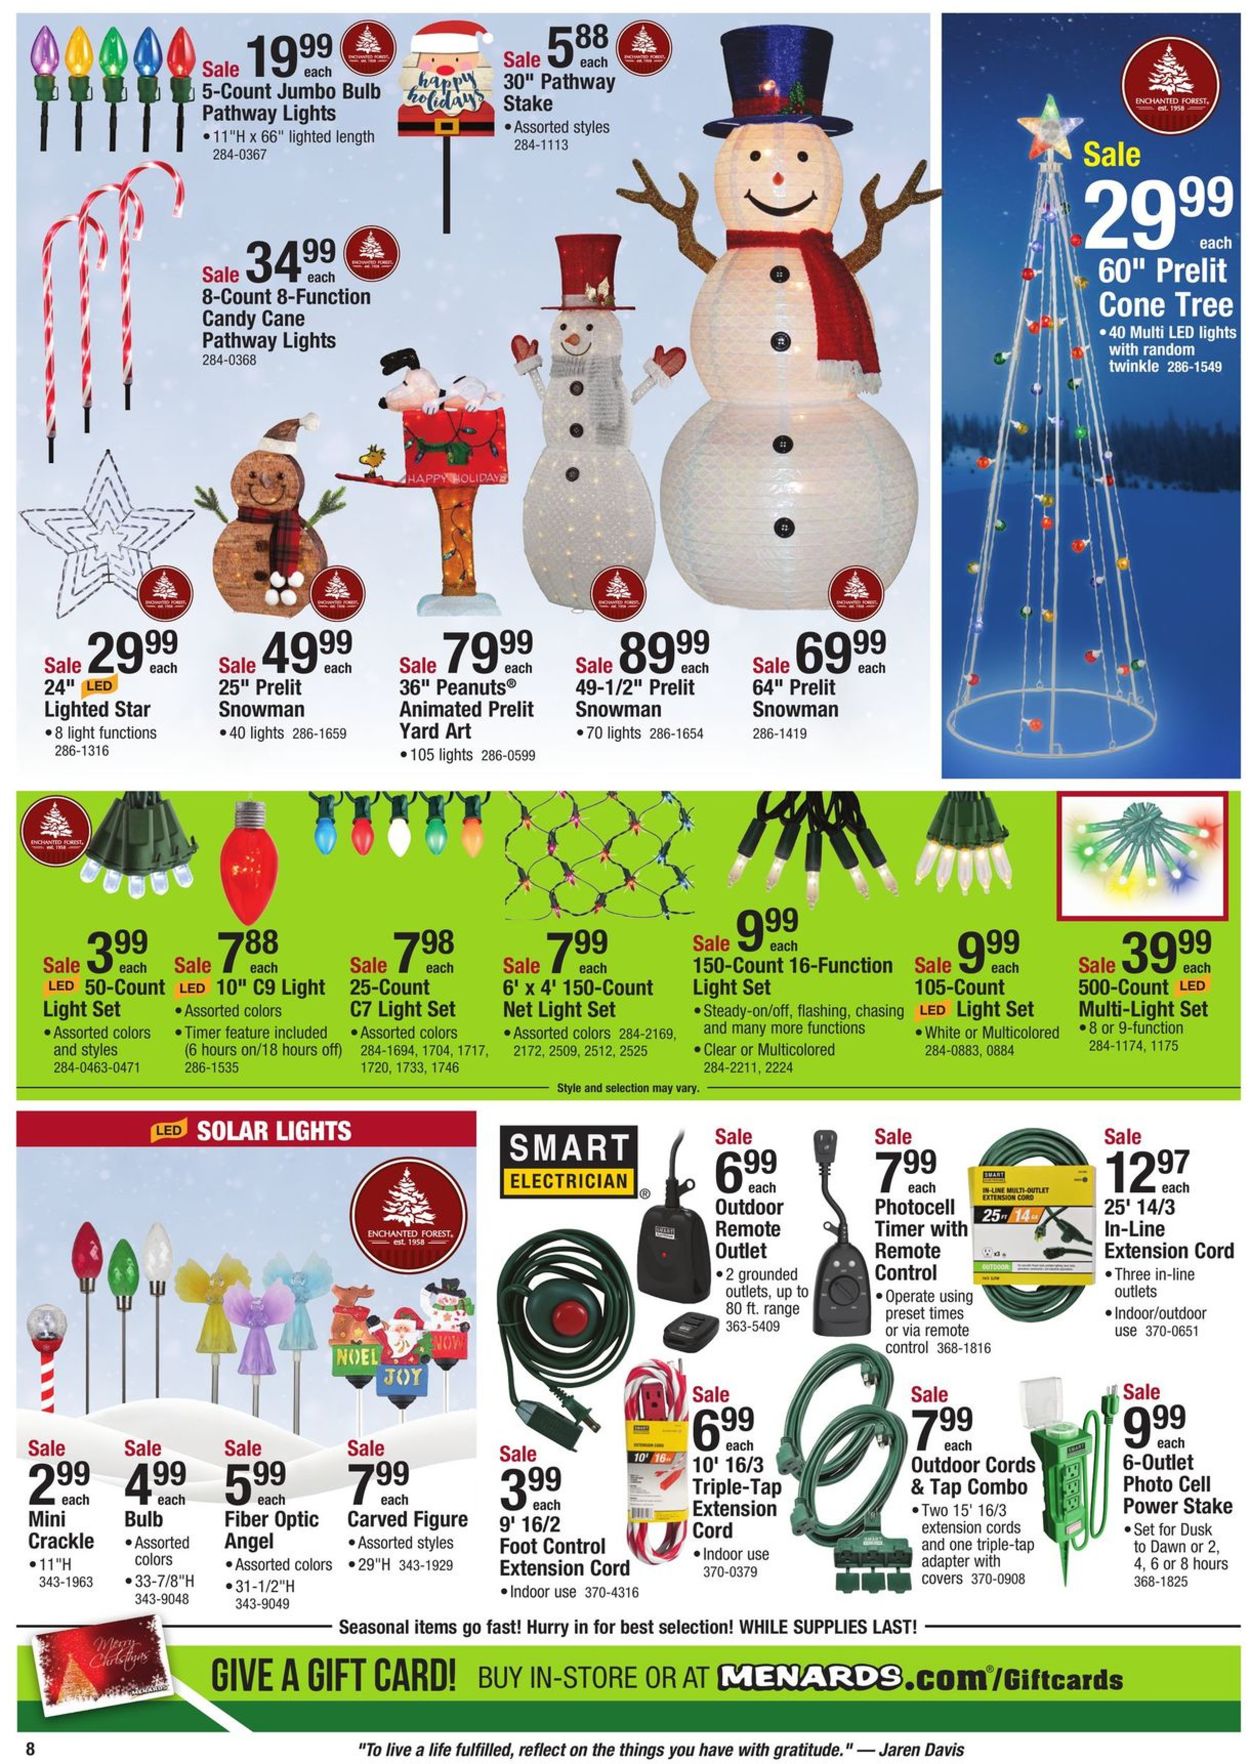 Menards - Christmas Ad 2019 Current weekly ad 11/24 - 12/07/2019 [9] - www.lvspeedy30.com